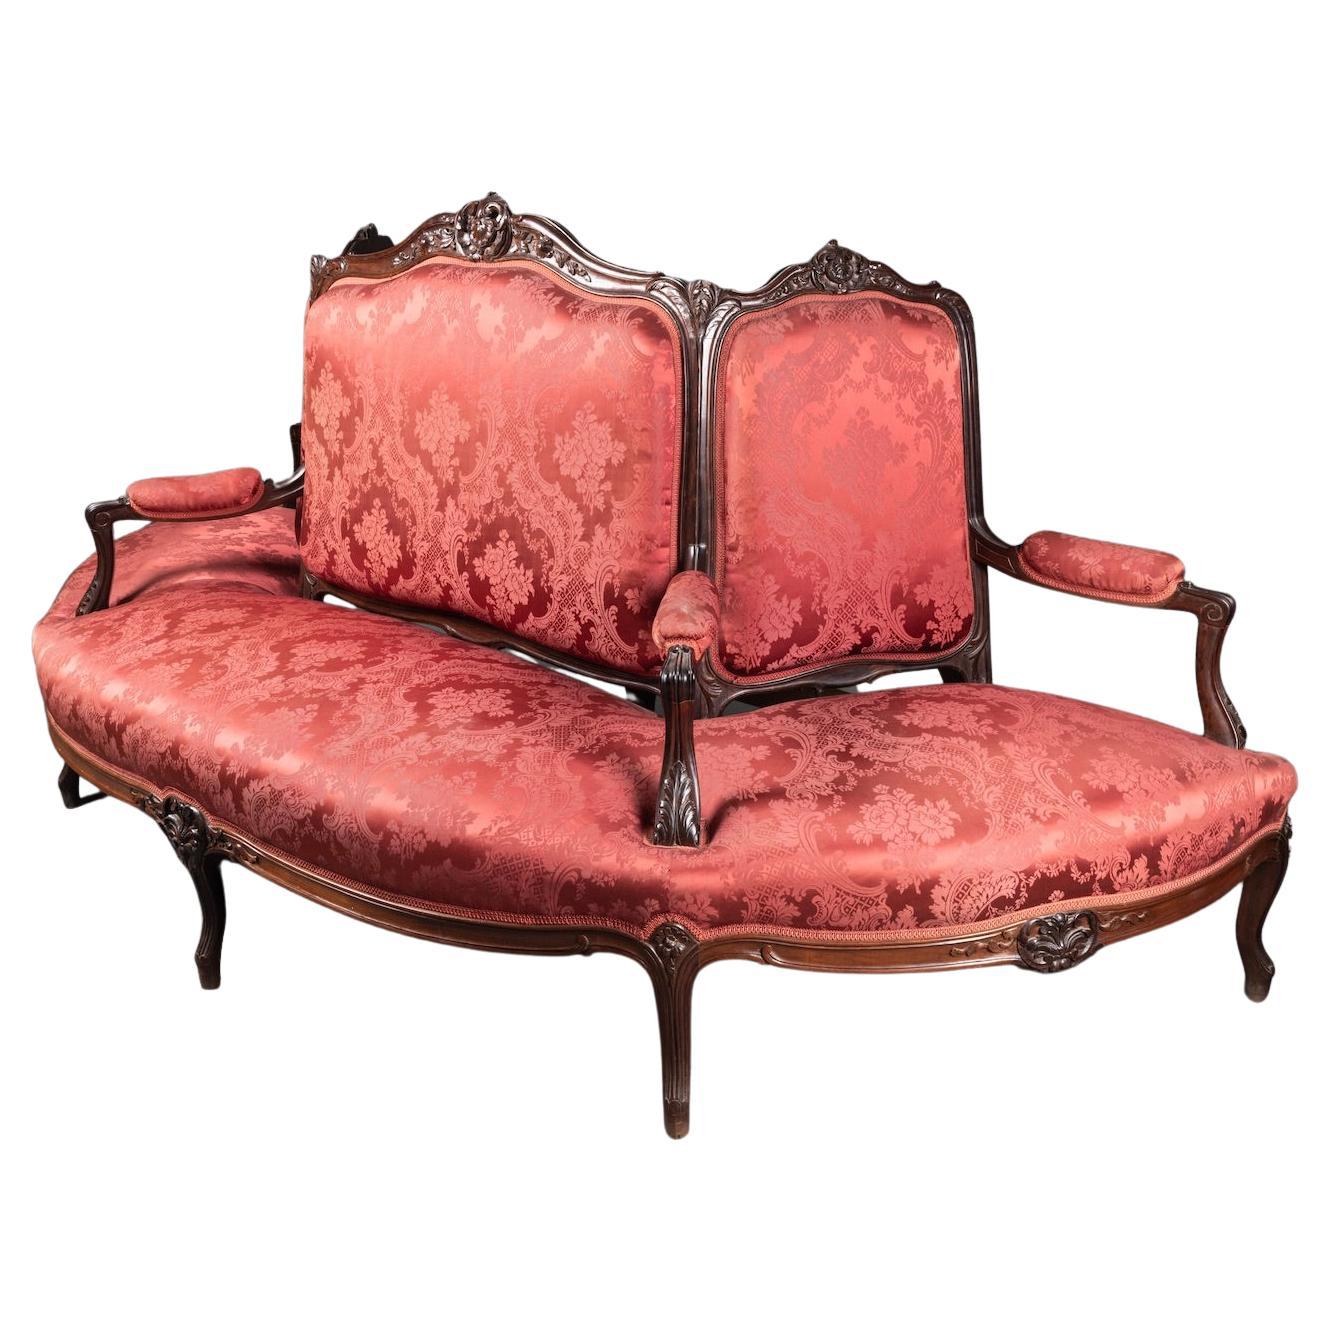 19th century demi-borne / Half seat in rosewood 